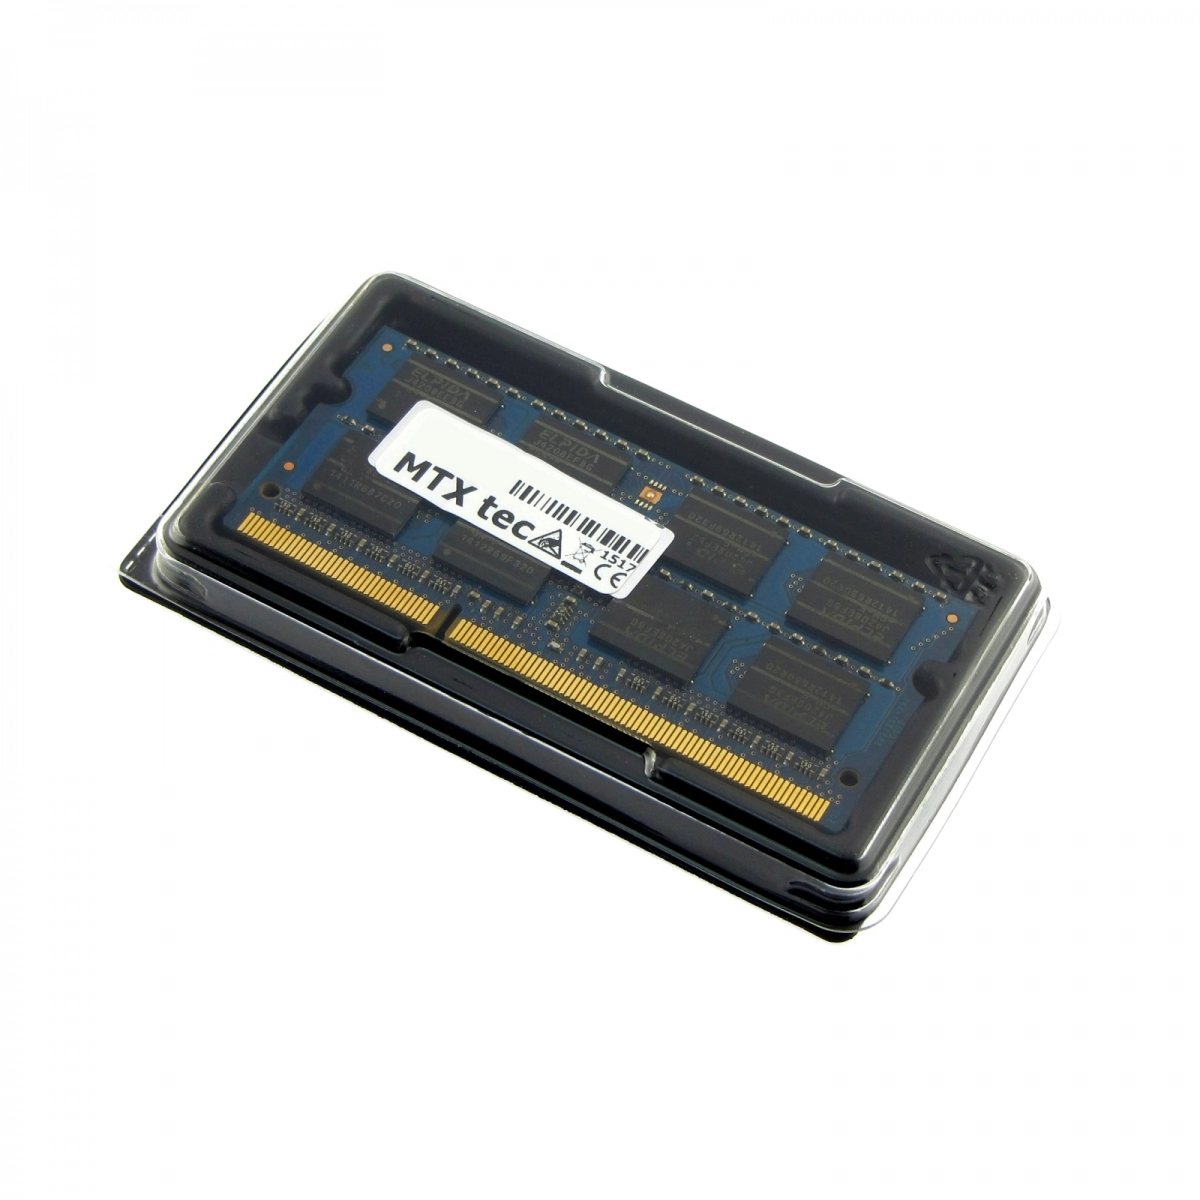 MTXtec Arbeitsspeicher 4 GB RAM für HP G72-a06